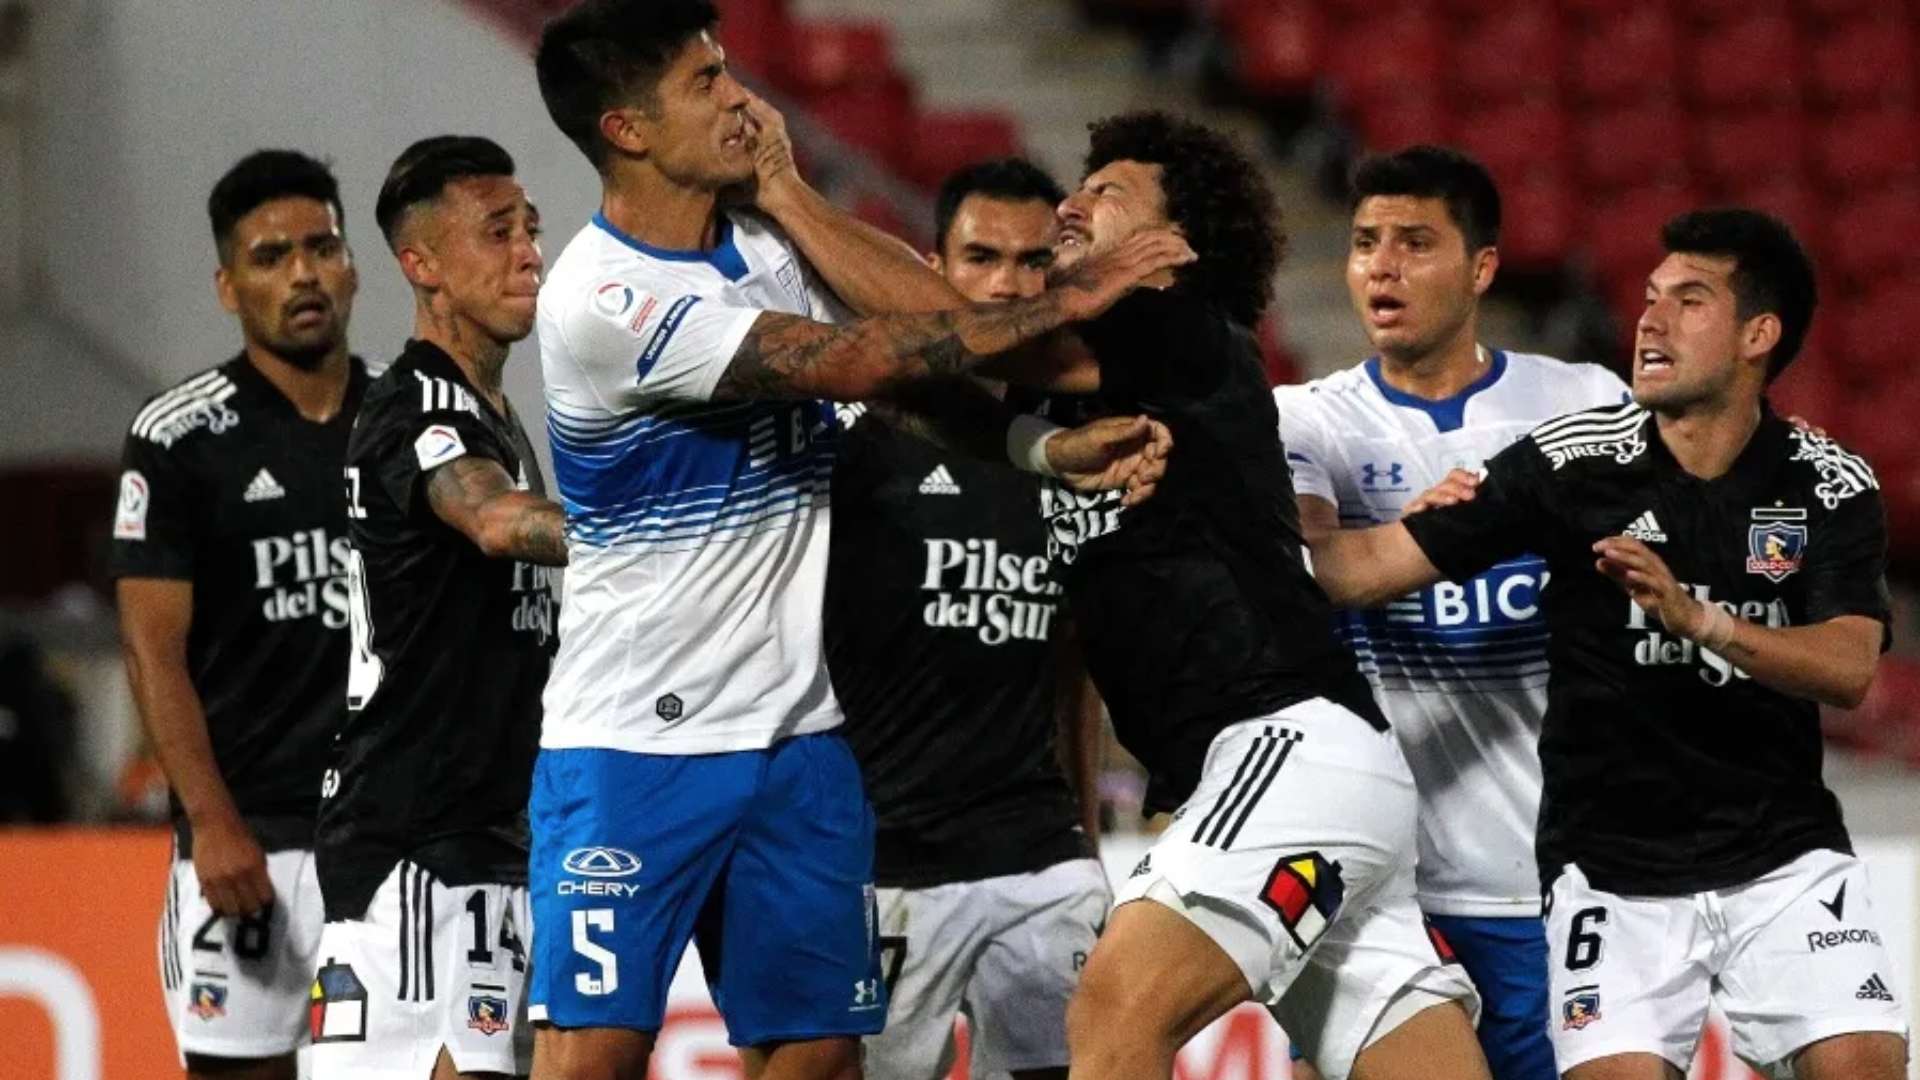 Maxi Falcón expulsión Colo Colo Católica Supercopa